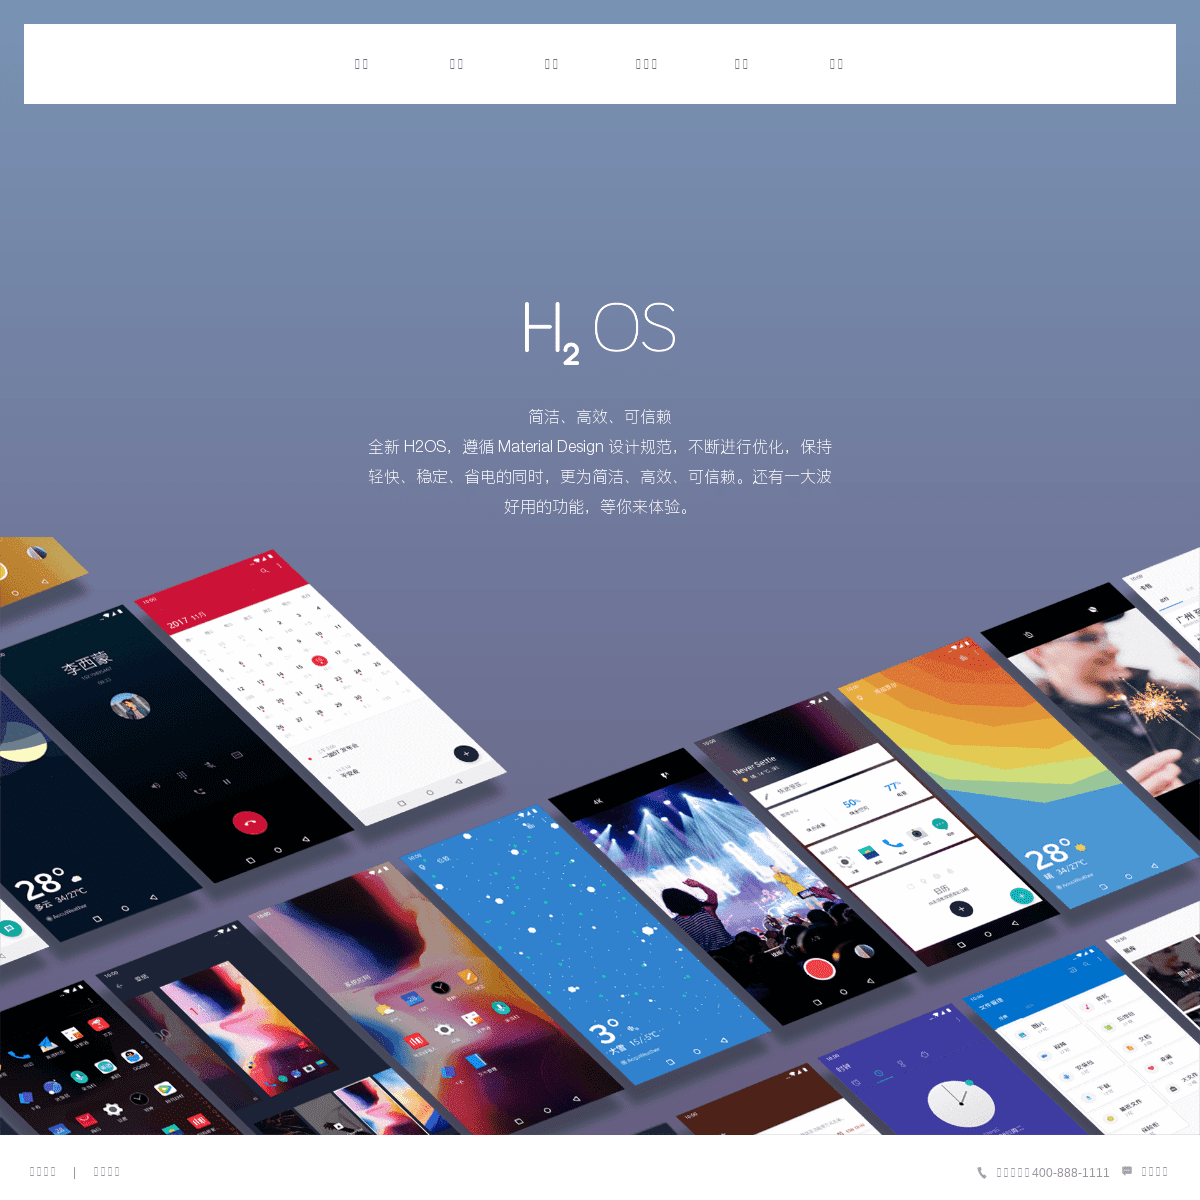 一加手机氢OS/H2OS官方网站|艺术的生活家一切从氢开始|Android Rom